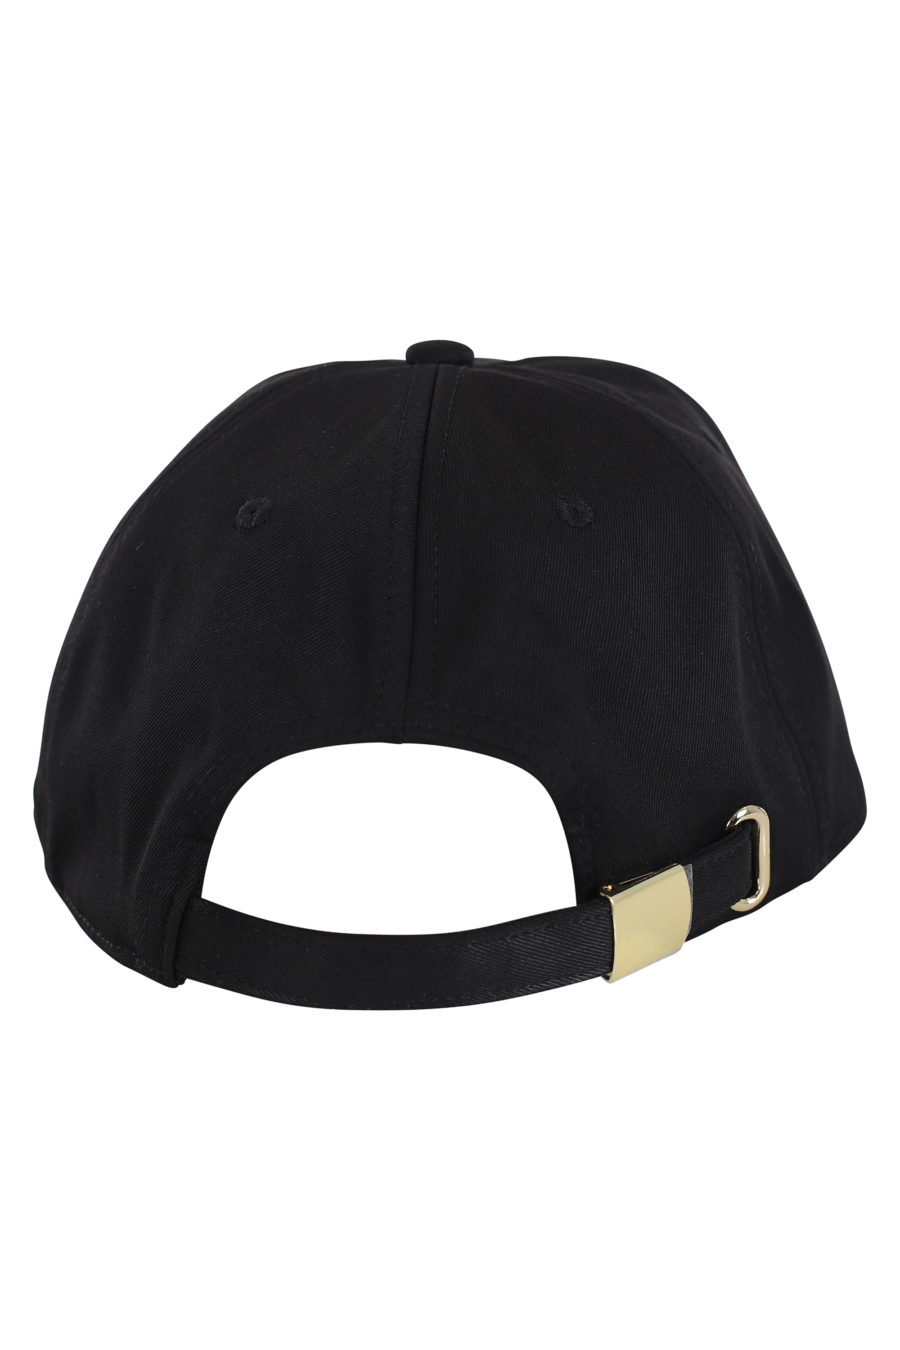 Gorra negra con logo dorado redondo - IMG 0140